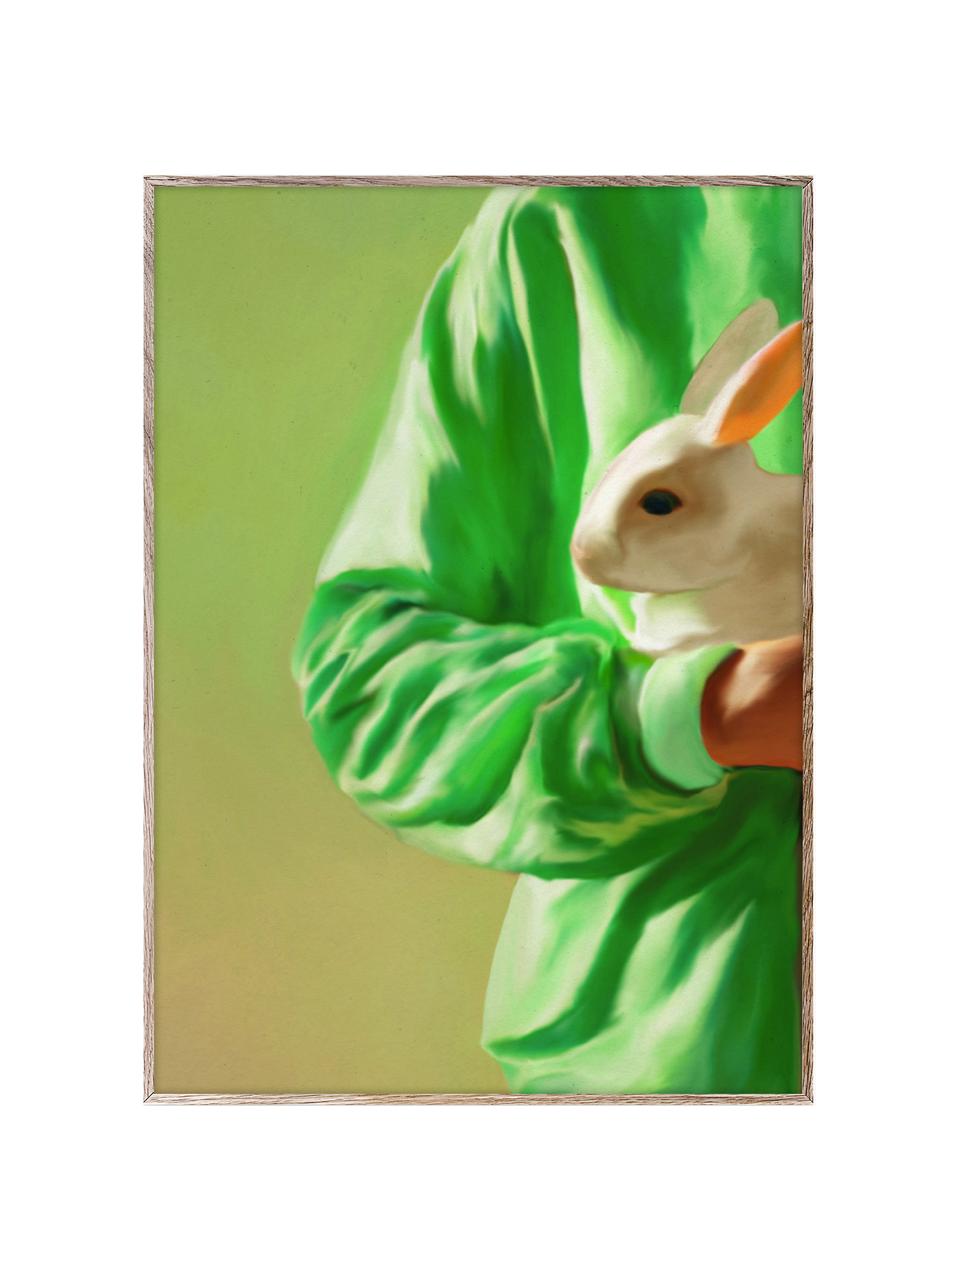 Poster White Rabbit, 210 g mattes Hahnemühle-Papier, Digitaldruck mit 10 UV-beständigen Farben, Grüntöne, B 30 x H 40 cm